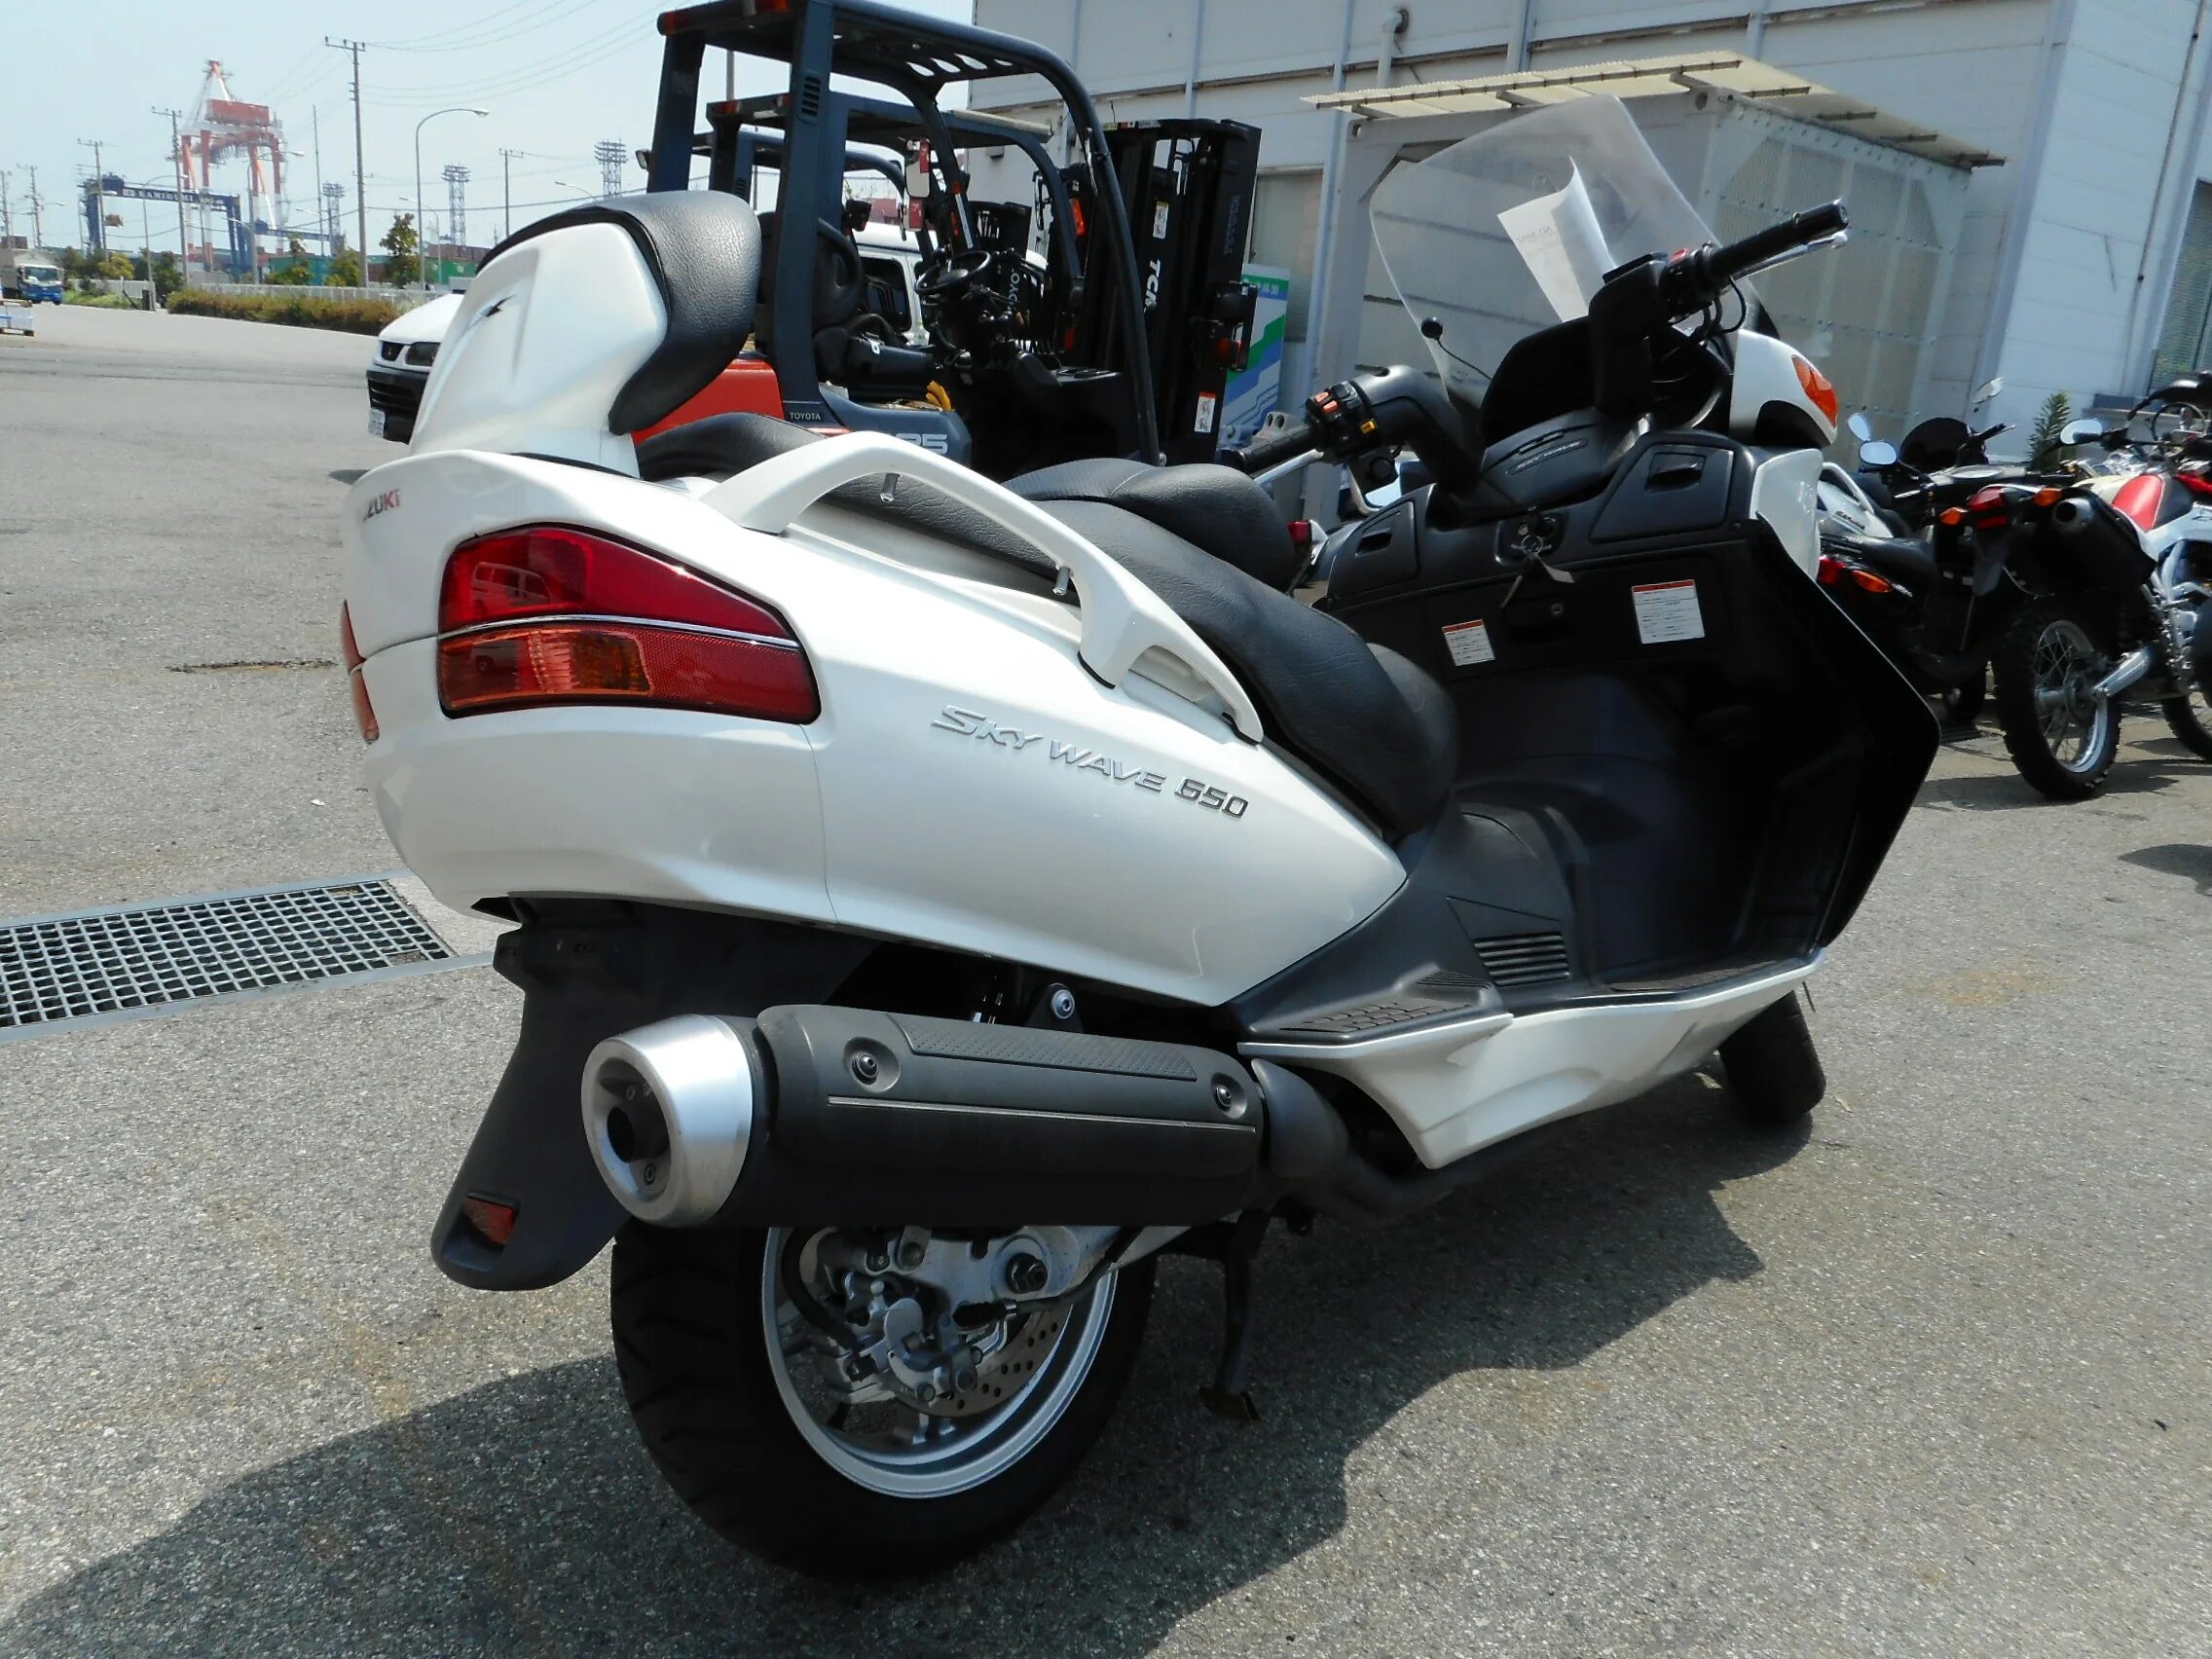 Suzuki skywave 650. Skywave 650. Мотоцикл Suzuki Skywave 650. Burgman 650 белый.